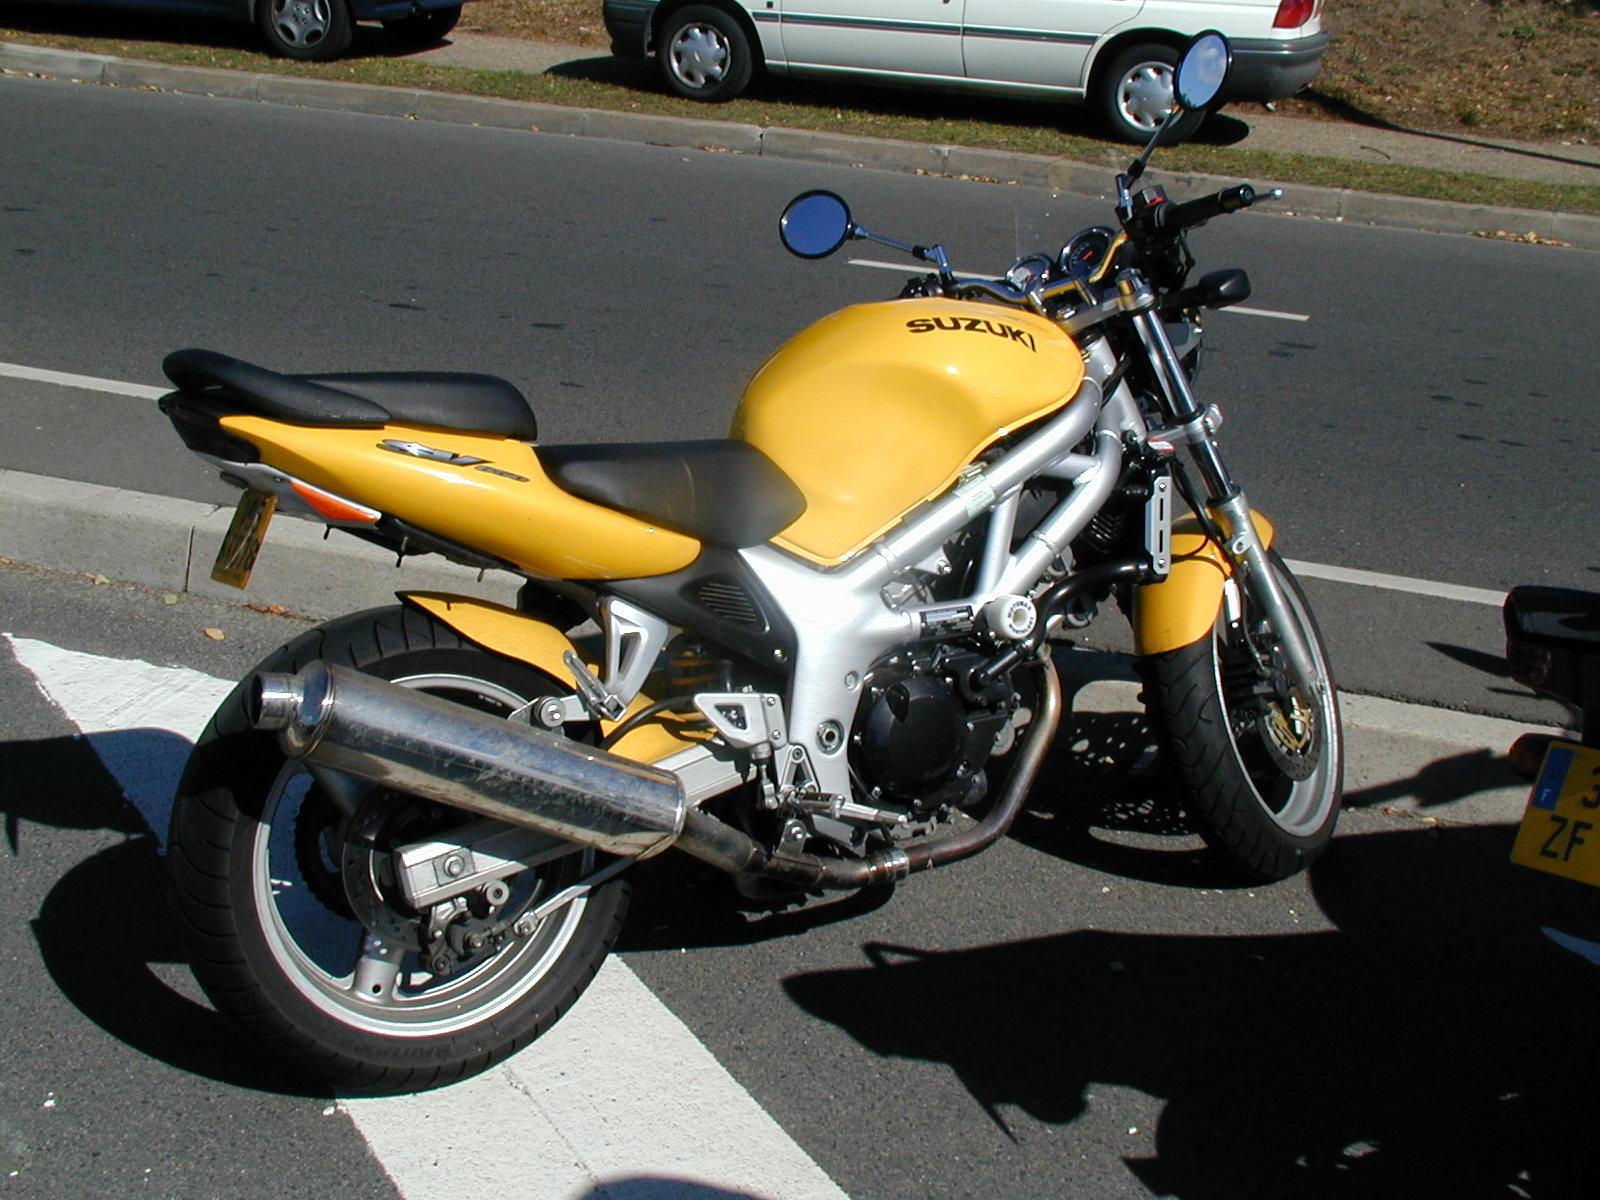 File:Suzuki 650-sv-1.jpg - Wikipedia